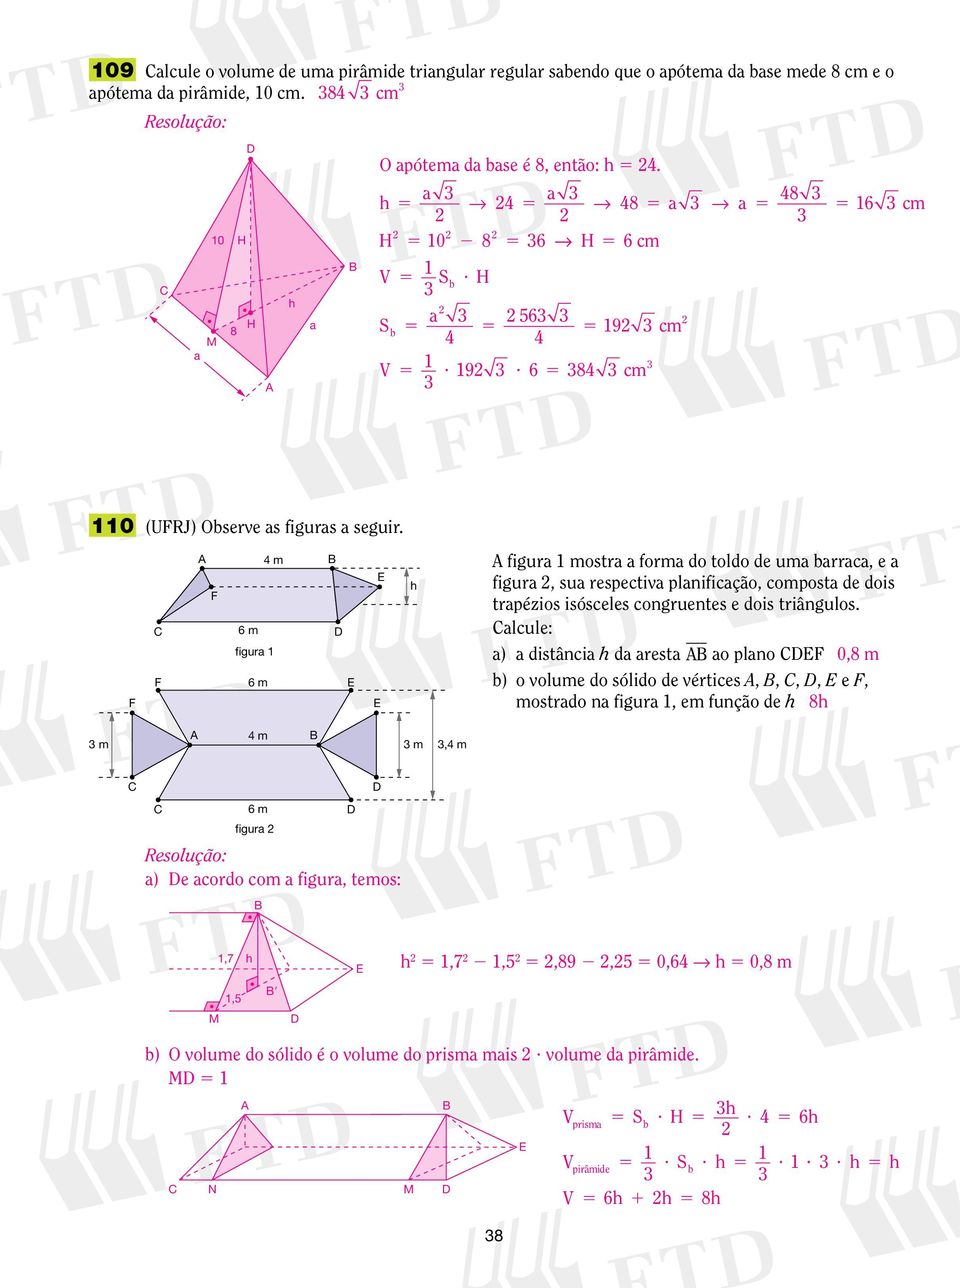 F F F m 6 m figur 6 m figur mostr form do toldo de um brrc, e figur, su respectiv plnificção, compost de dois trpézios isósceles congruentes e dois triângulos.